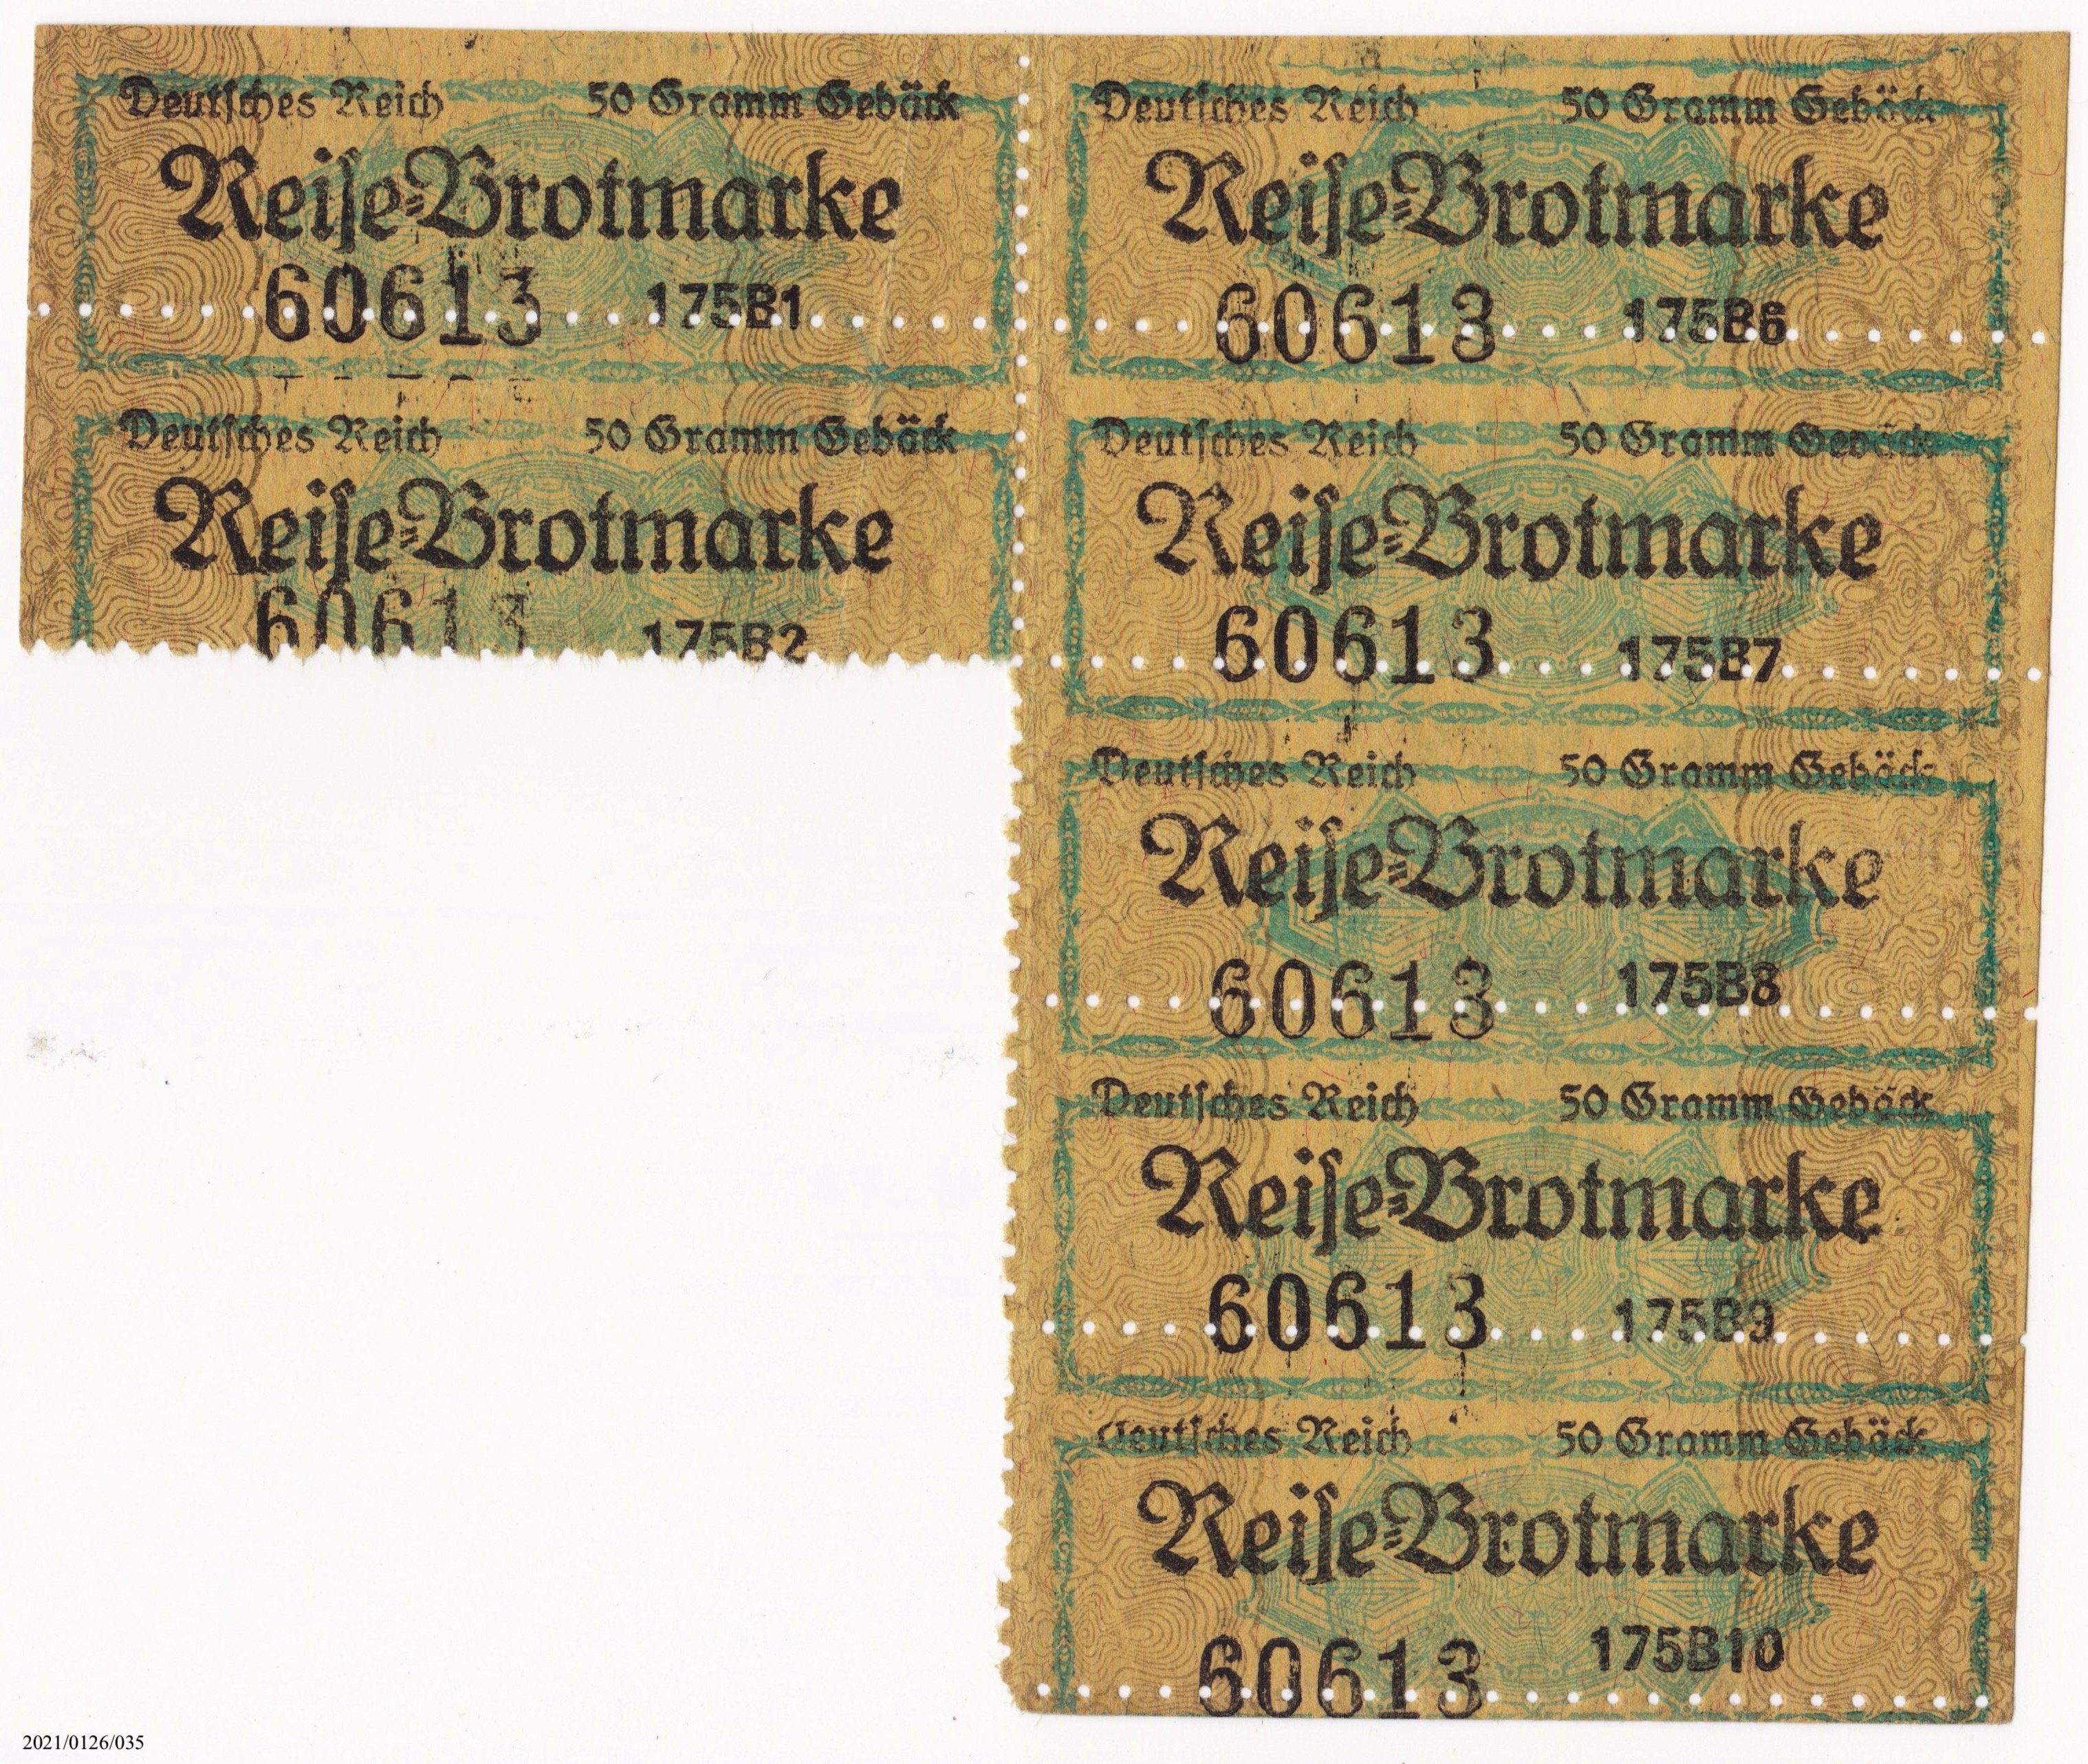 Reise-Brotmarke Deutsches Reich 50g Gebäck (Museumsgesellschaft Bad Dürkheim e. V. CC BY-NC-SA)